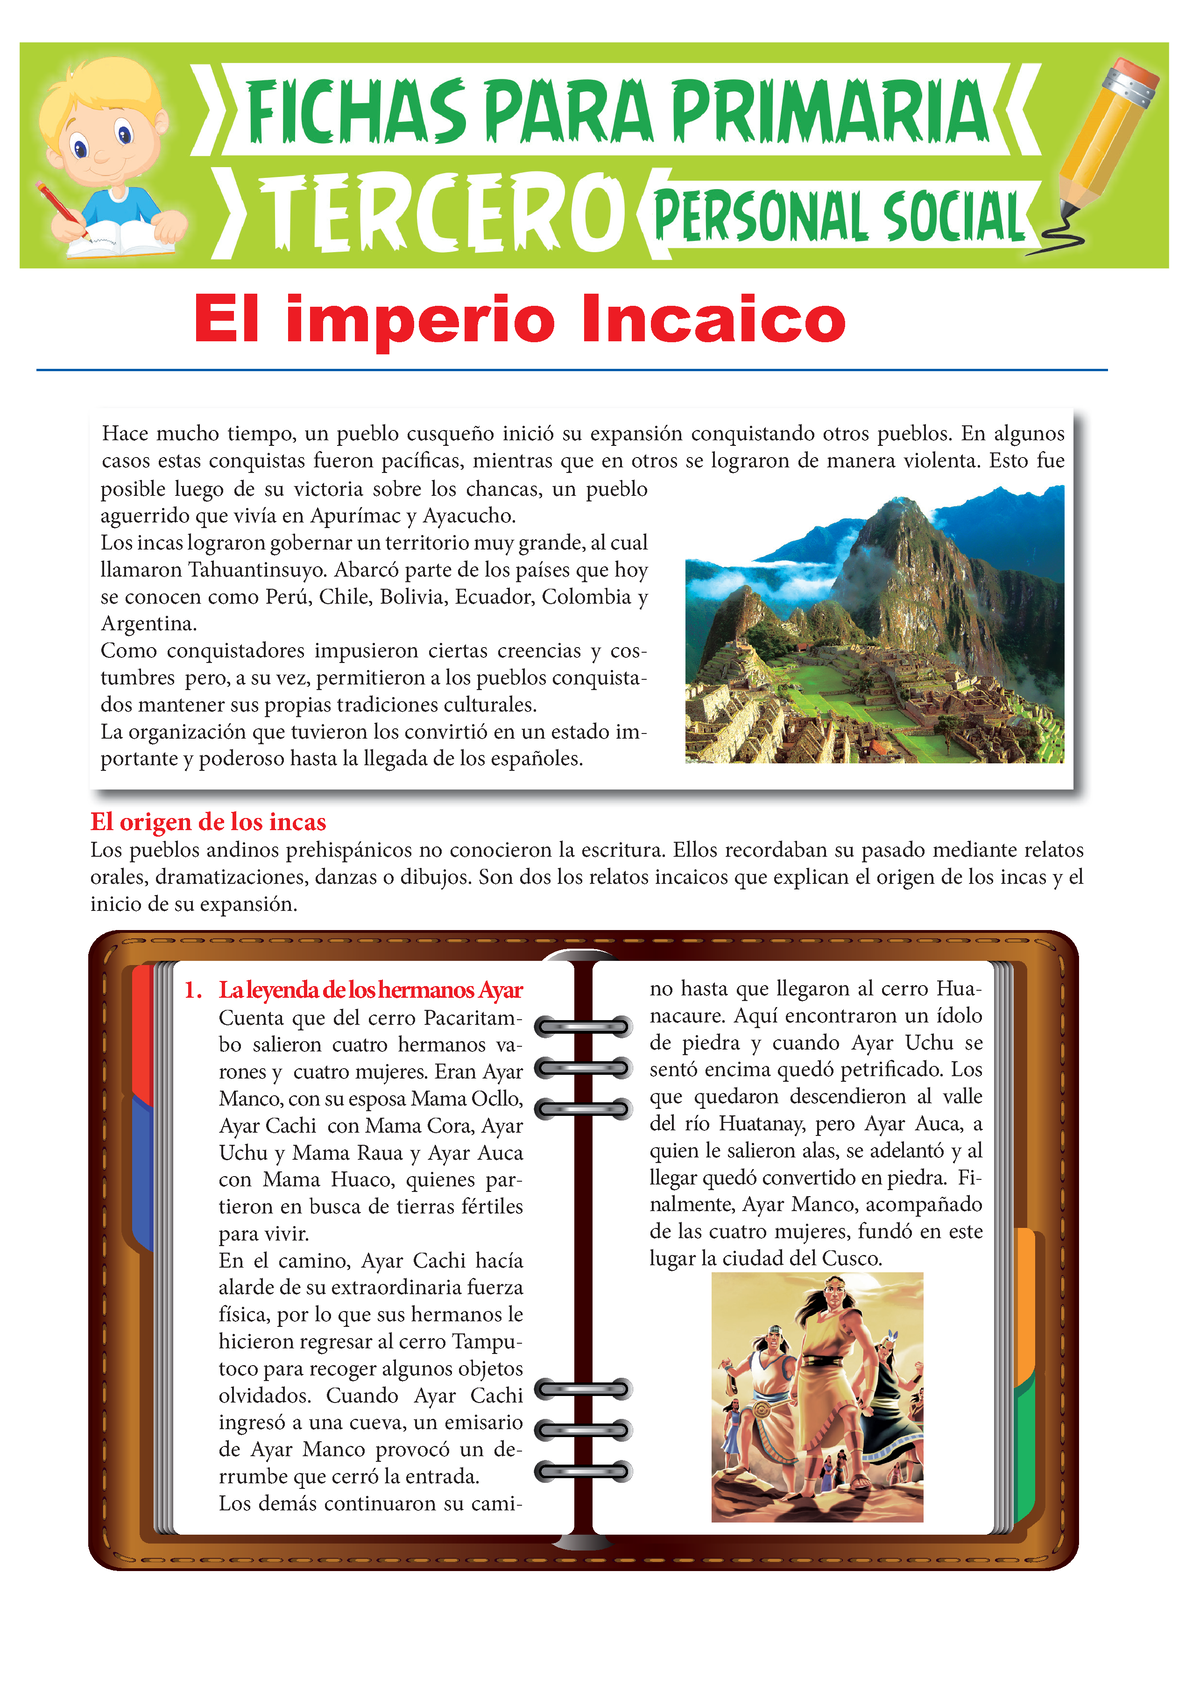 El Imperio Incaico Para Tercer Grado De Primaria Ok El Origen De Los Incas Los Pueblos Andinos 5062